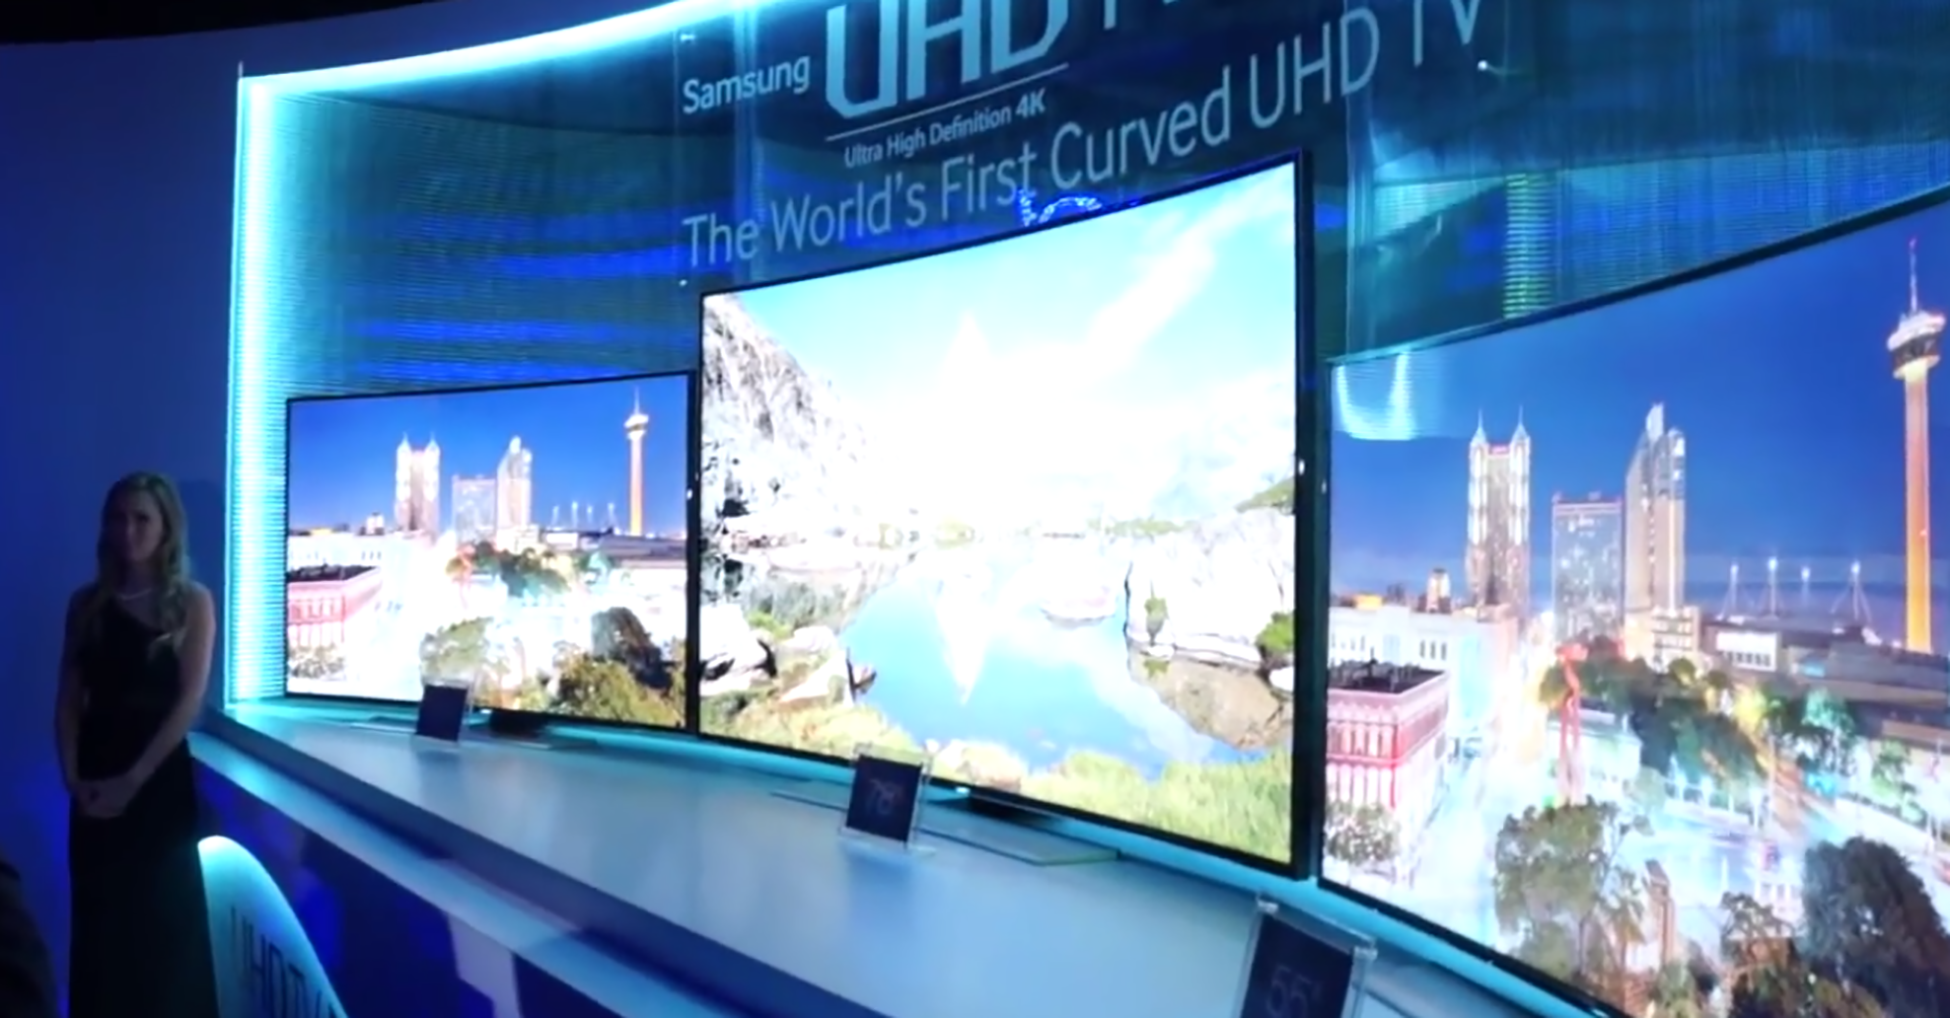 Une photographie montre un grand téléviseur avec un écran concave. Au-dessus de l'écran de télévision se trouve un panneau sur lequel on peut lire : Samsung U H D, le premier U H D T V incurvé au monde.